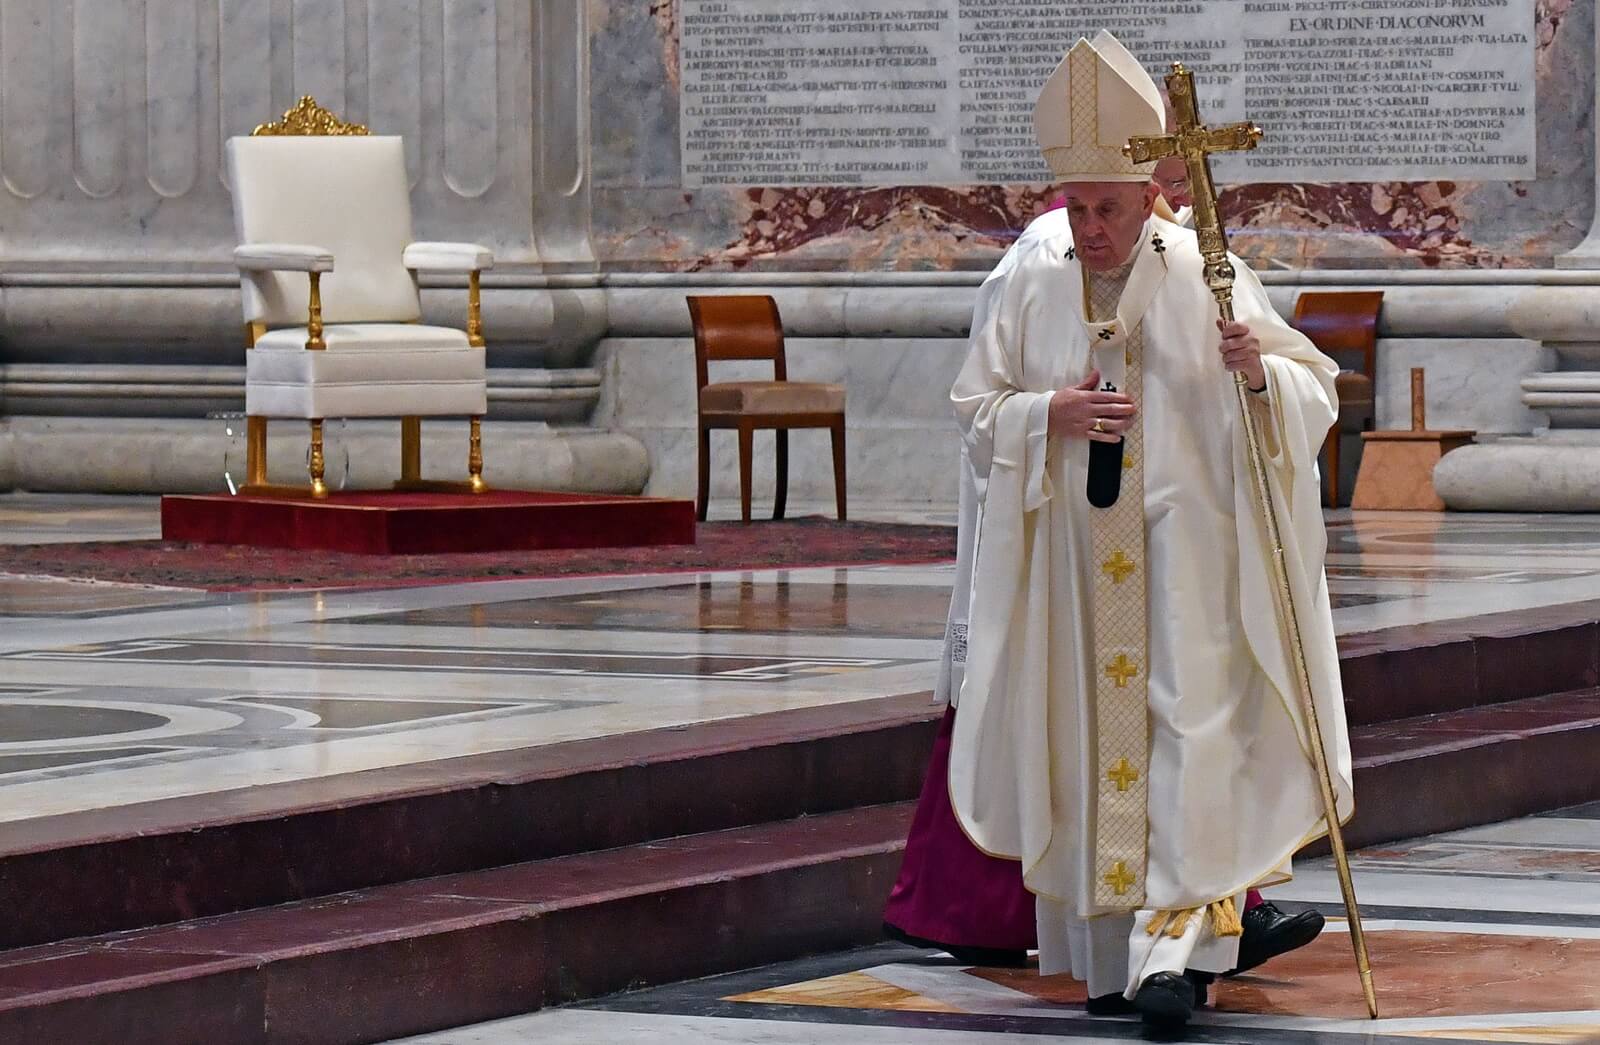 Samotny papież Franciszek sam podczas obchodów Wieczerzy Pańskiej fot. EPA/ALESSANDRO DI MEO